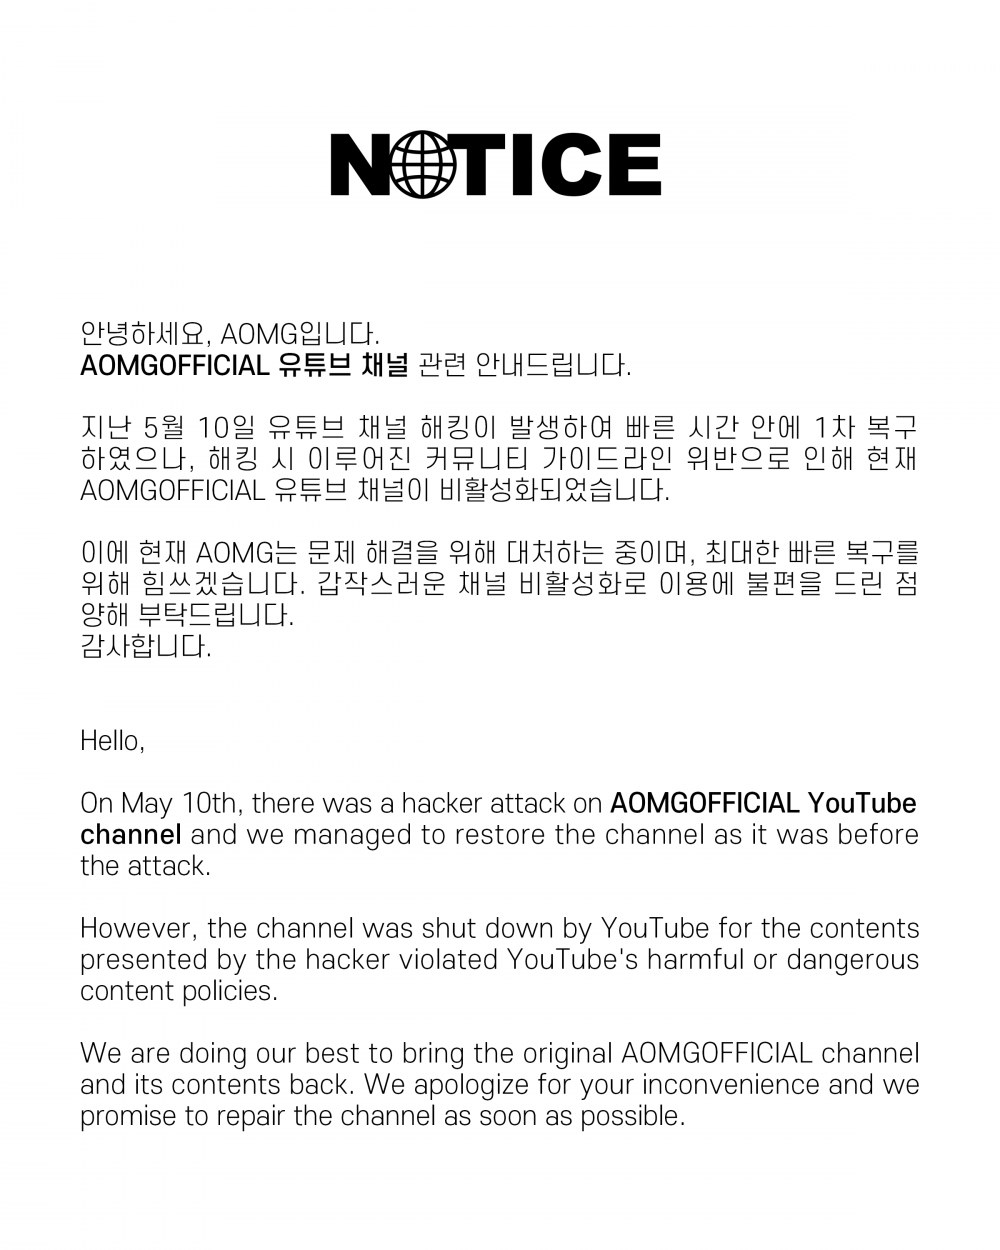 AOMG выпустила официальное заявление, подтверждающее, что аккаунт лейбла на YouTube был взломан